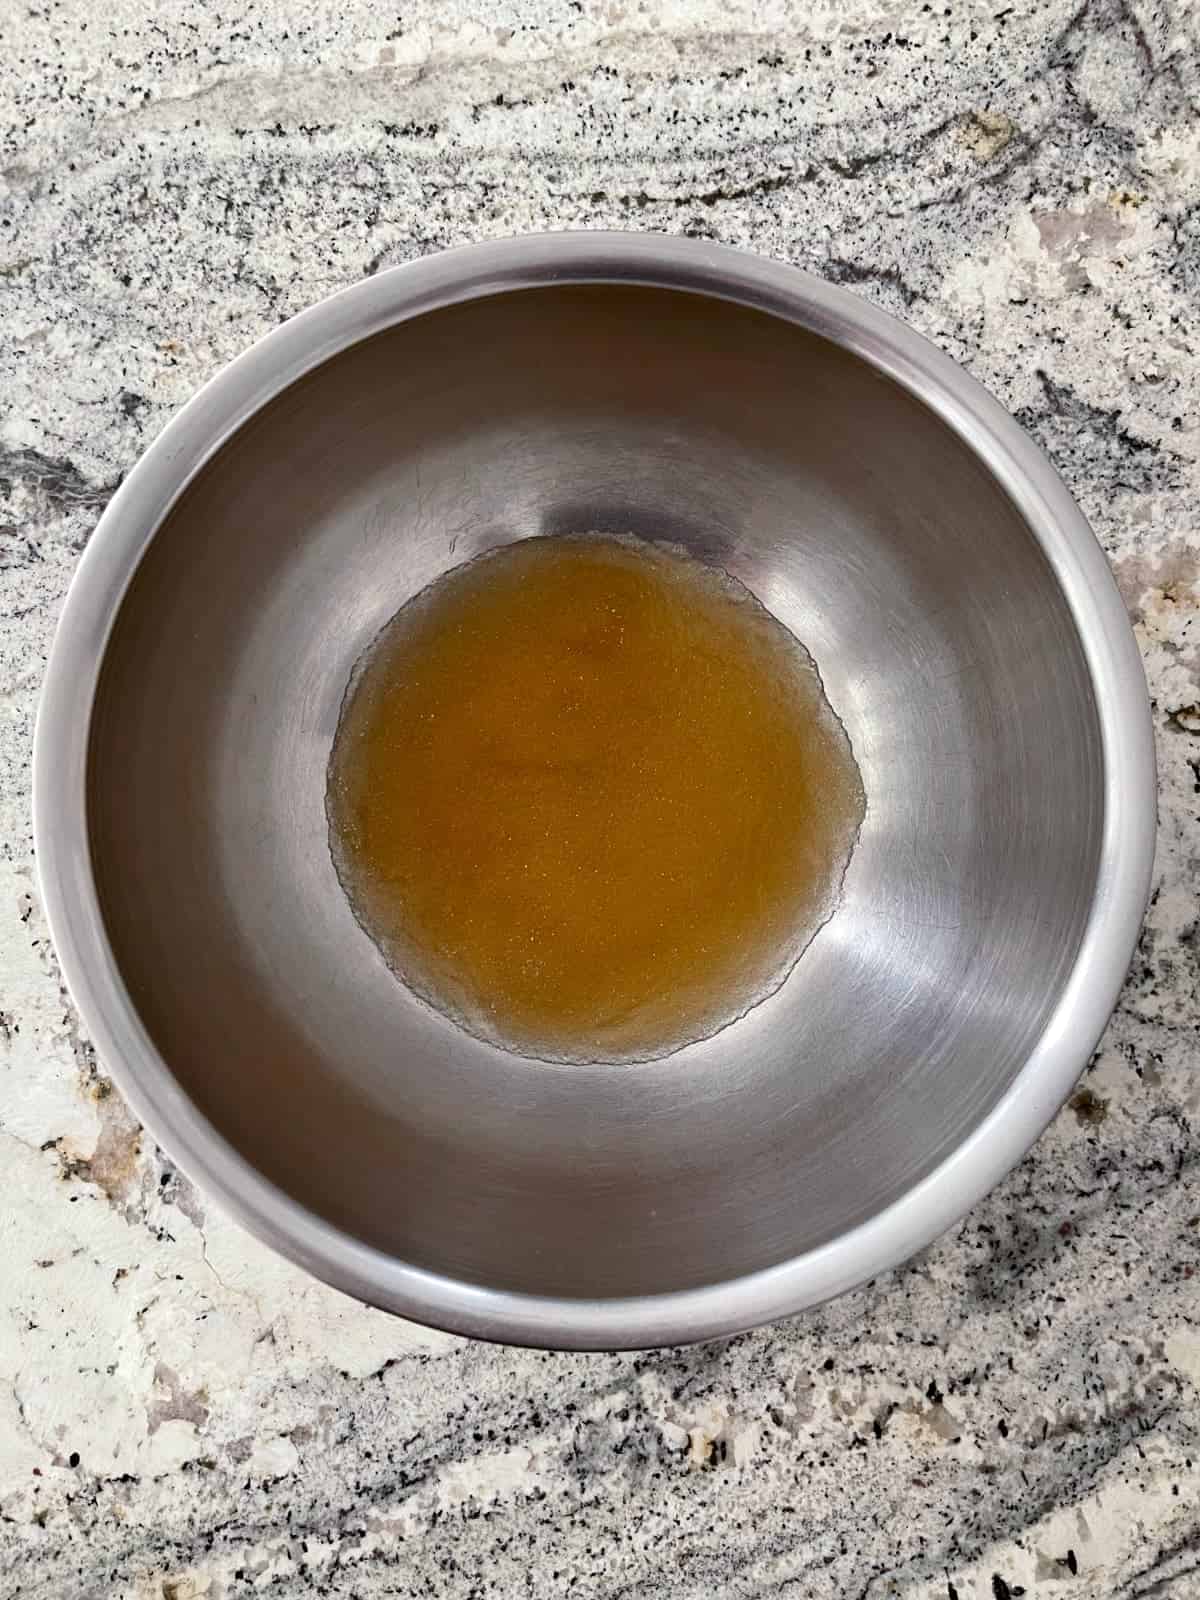 Blooming gelatin in apple juice in mixing bowl on granite.